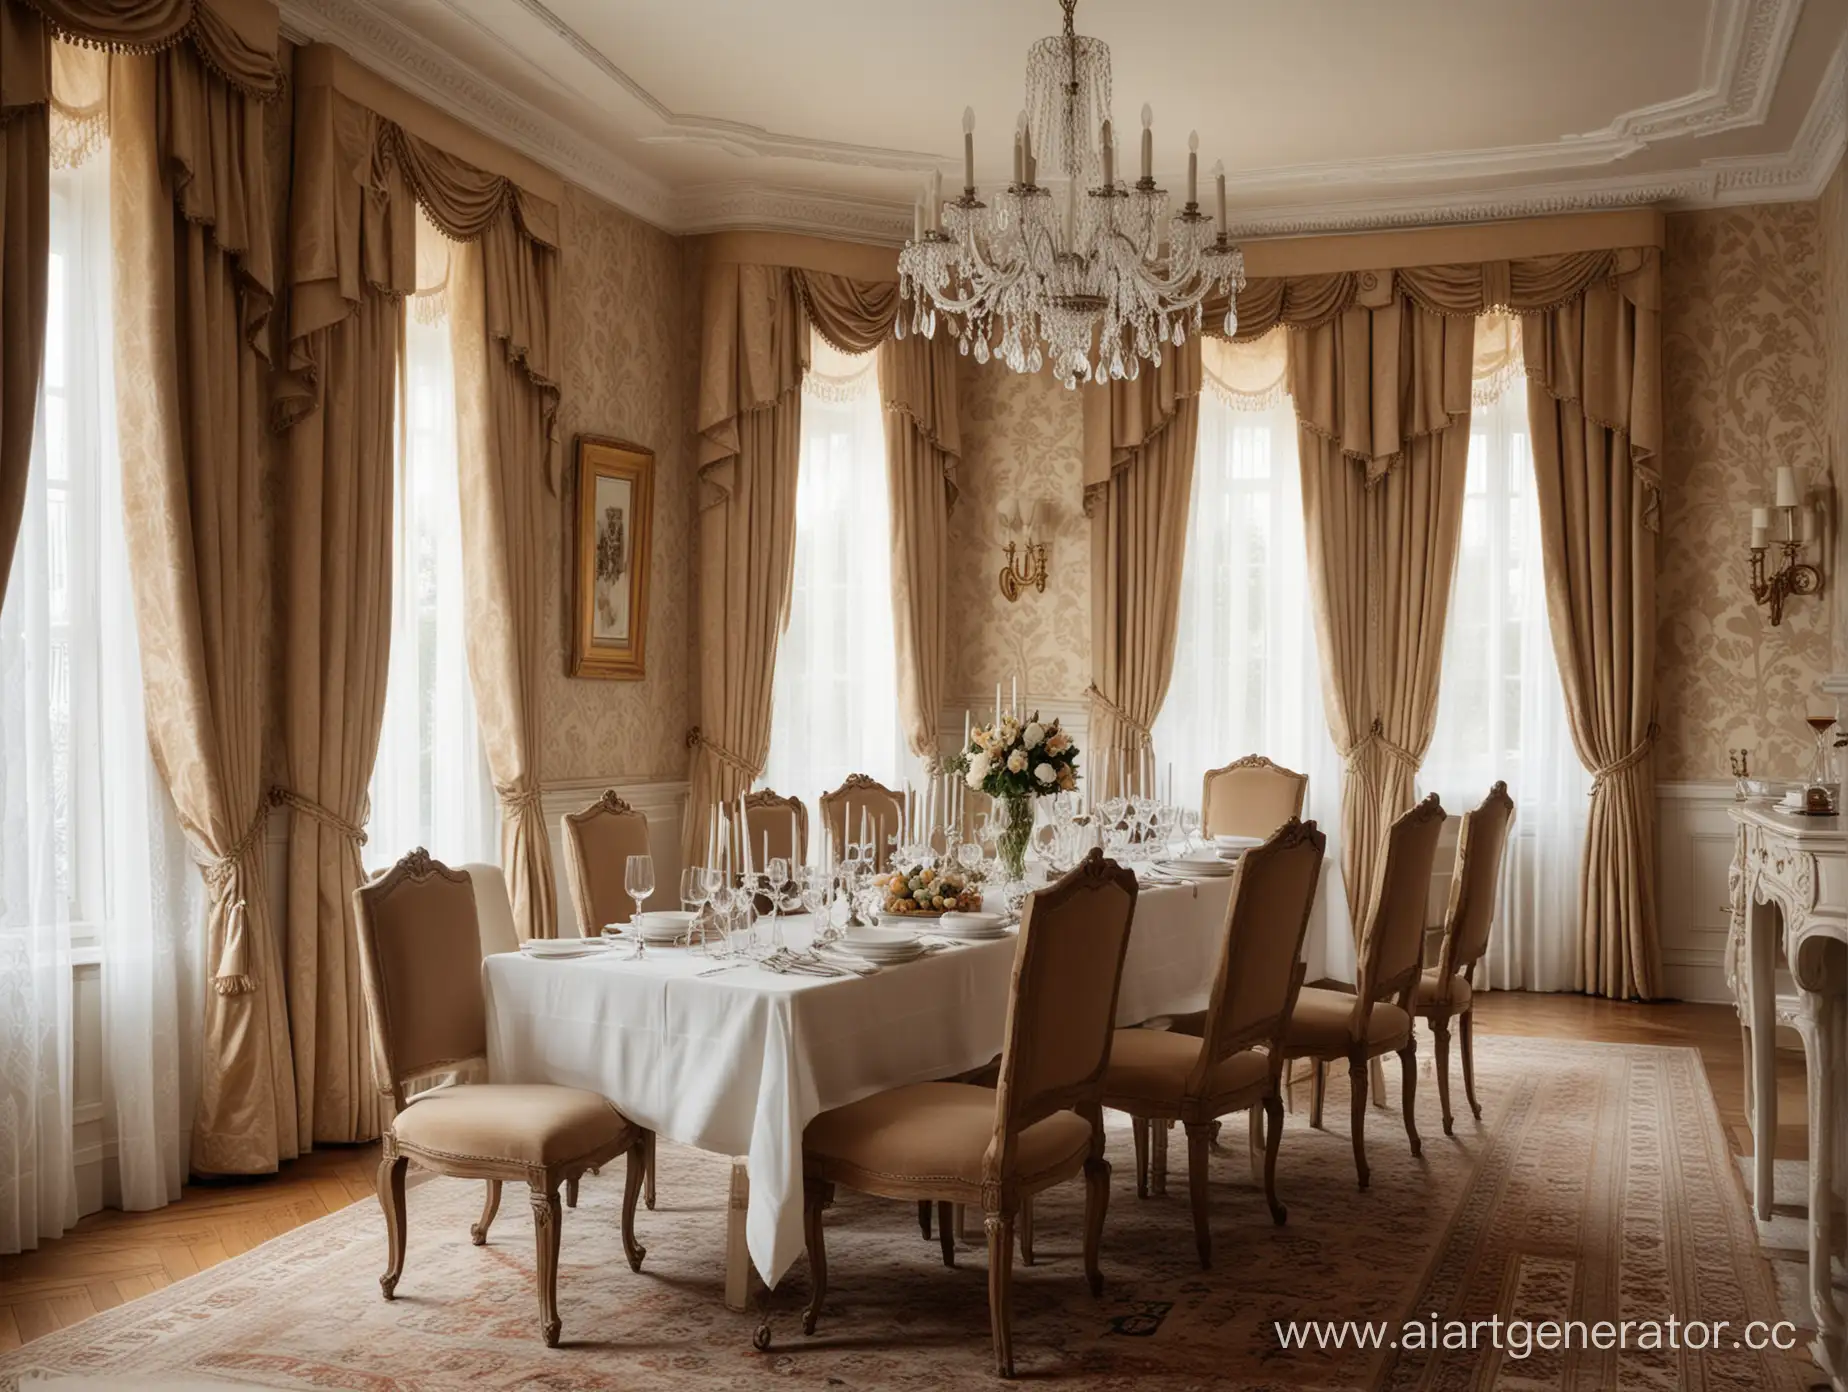 Обеденная в аристократическом стиле, убранный сервированный стол с белой скатертью и приборами, стулья обиты бархатом, на стенах полосатые бежевые обои, высокие зашторенные окна